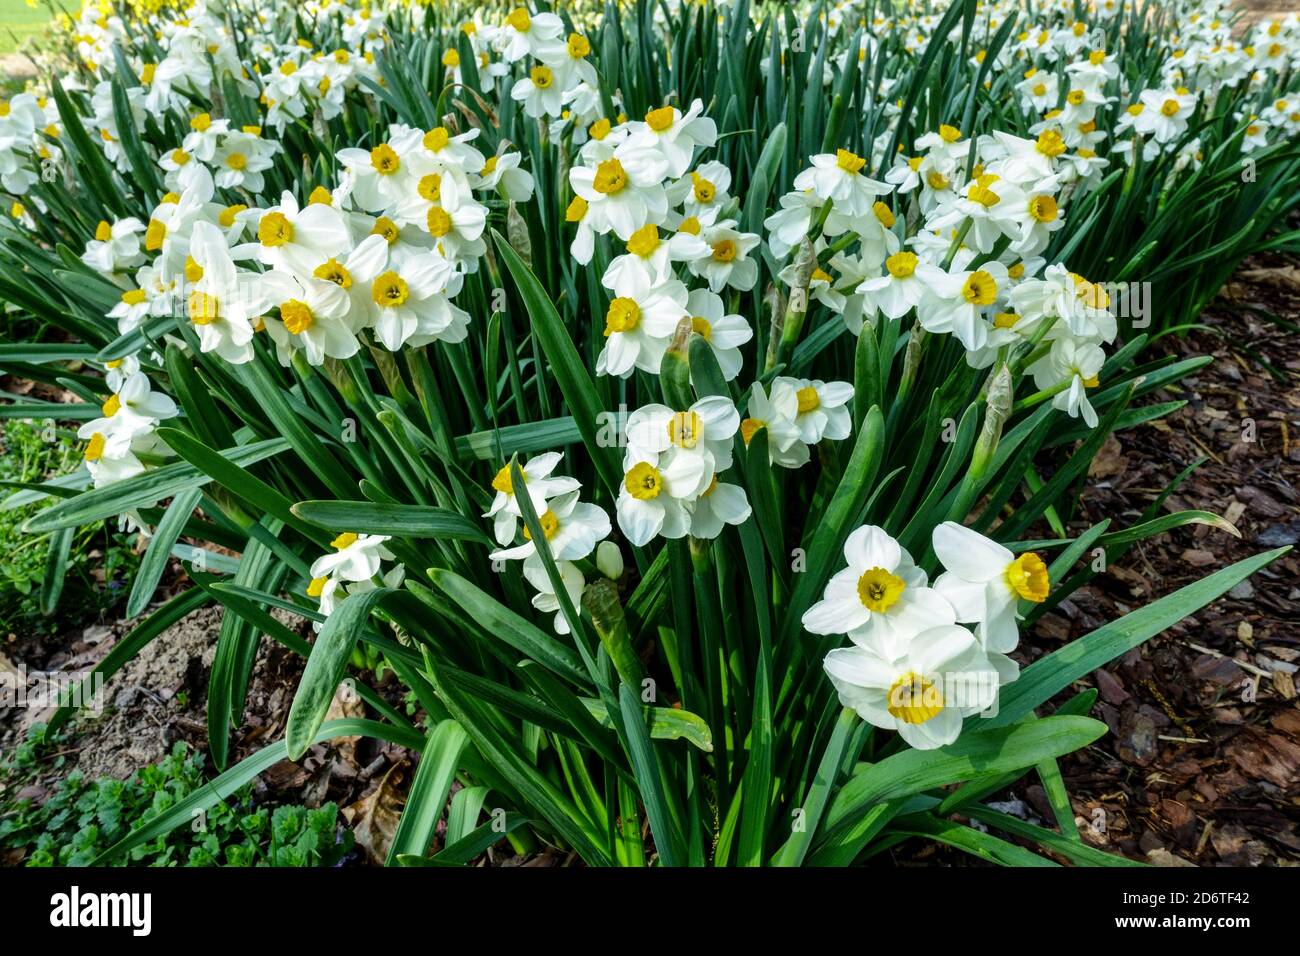 Frühling Garten Grenze Blumen Narzissen Narcissus 'Geranium' Blumenbeet Grenze Stockfoto